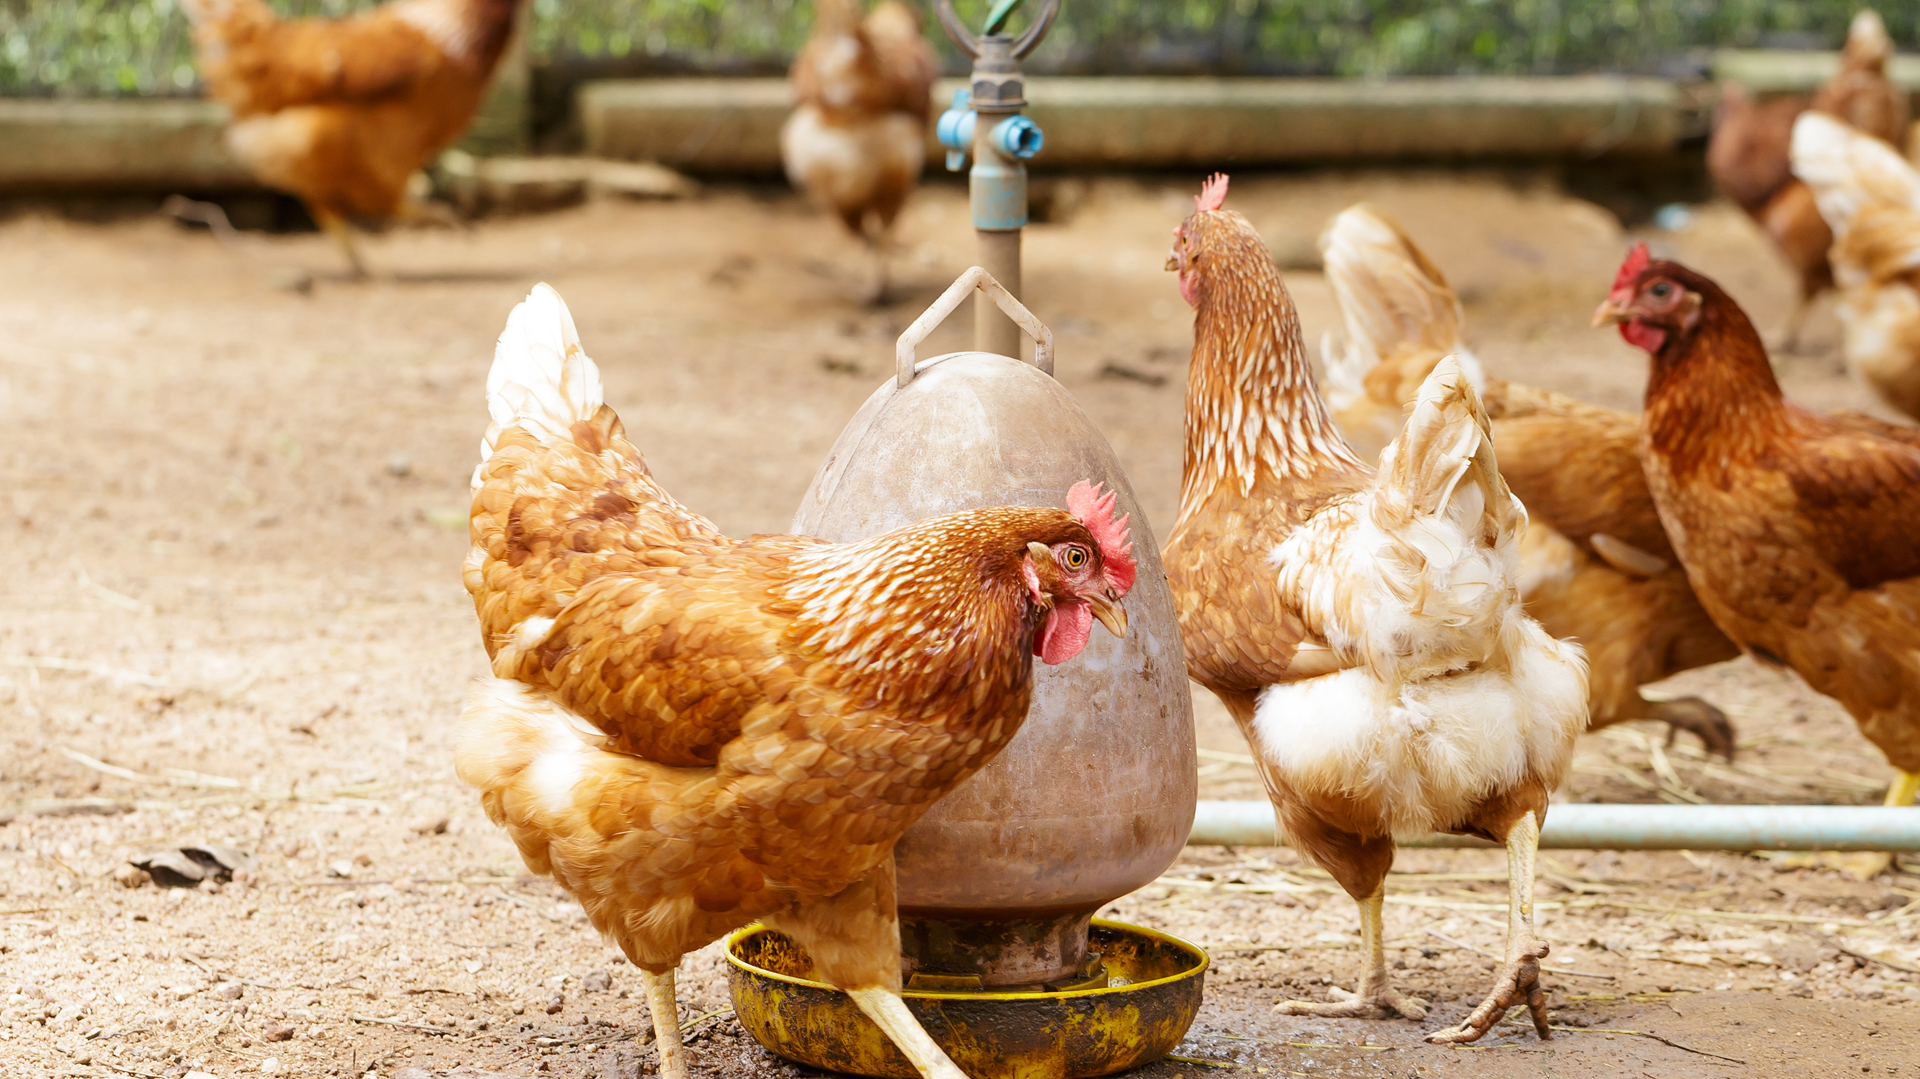 Por el momento, el brote de gripe aviar afectó principalmente a las aves. Pero el experto de la OMS, Richard Pebody reconoció que hay preocupación por el riesgo de que el virus salte a otro mamífero o a un ser humano y logre recombinarse con otros virus de la gripe. Esto podría hacer que se propague más entre personas